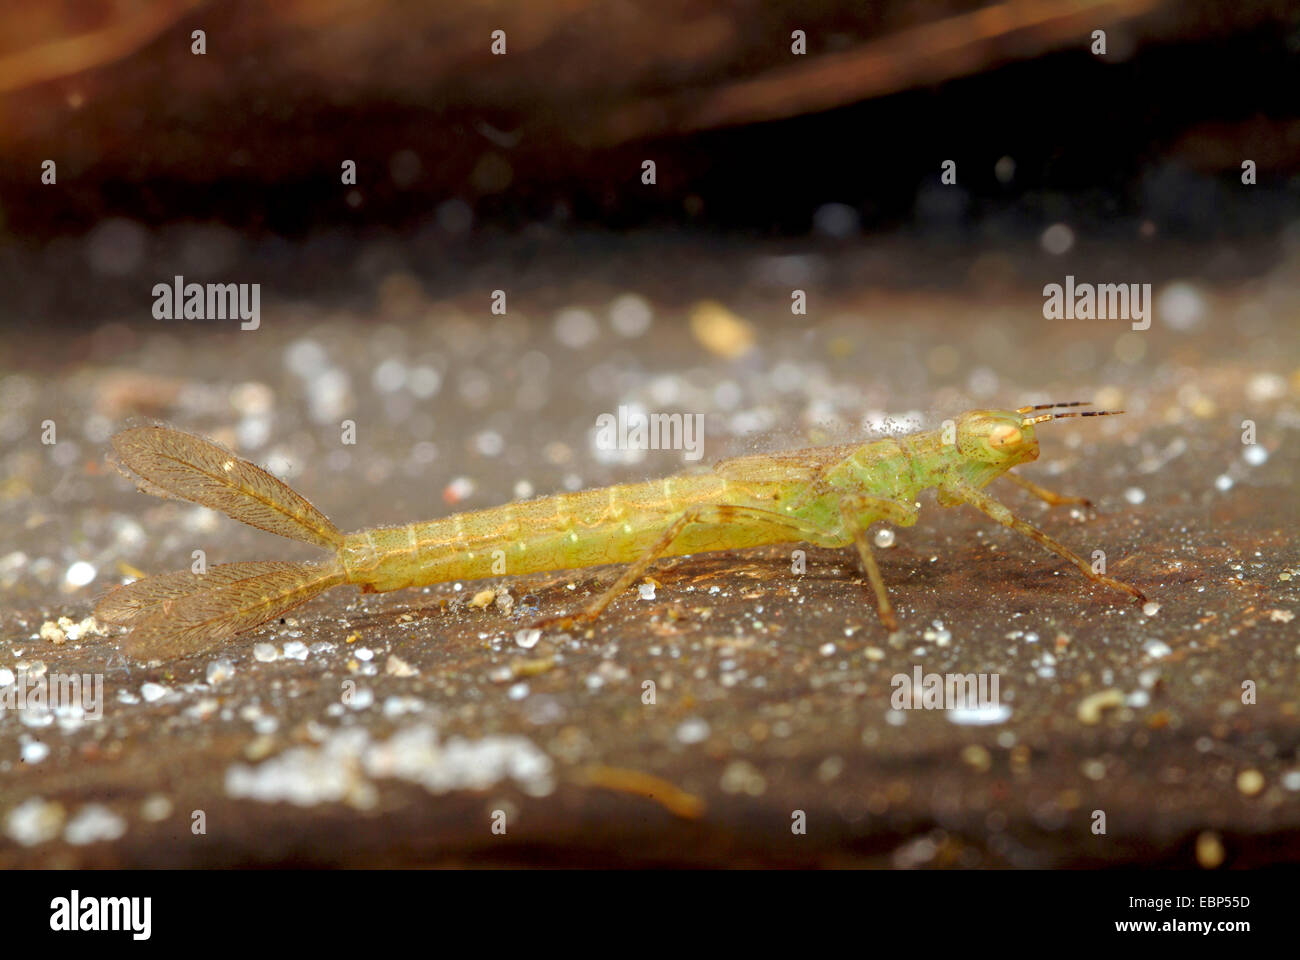 Coenagrion comune, Azure damselfly (Coenagrion puella), larva sotto l'acqua, Germania Foto Stock